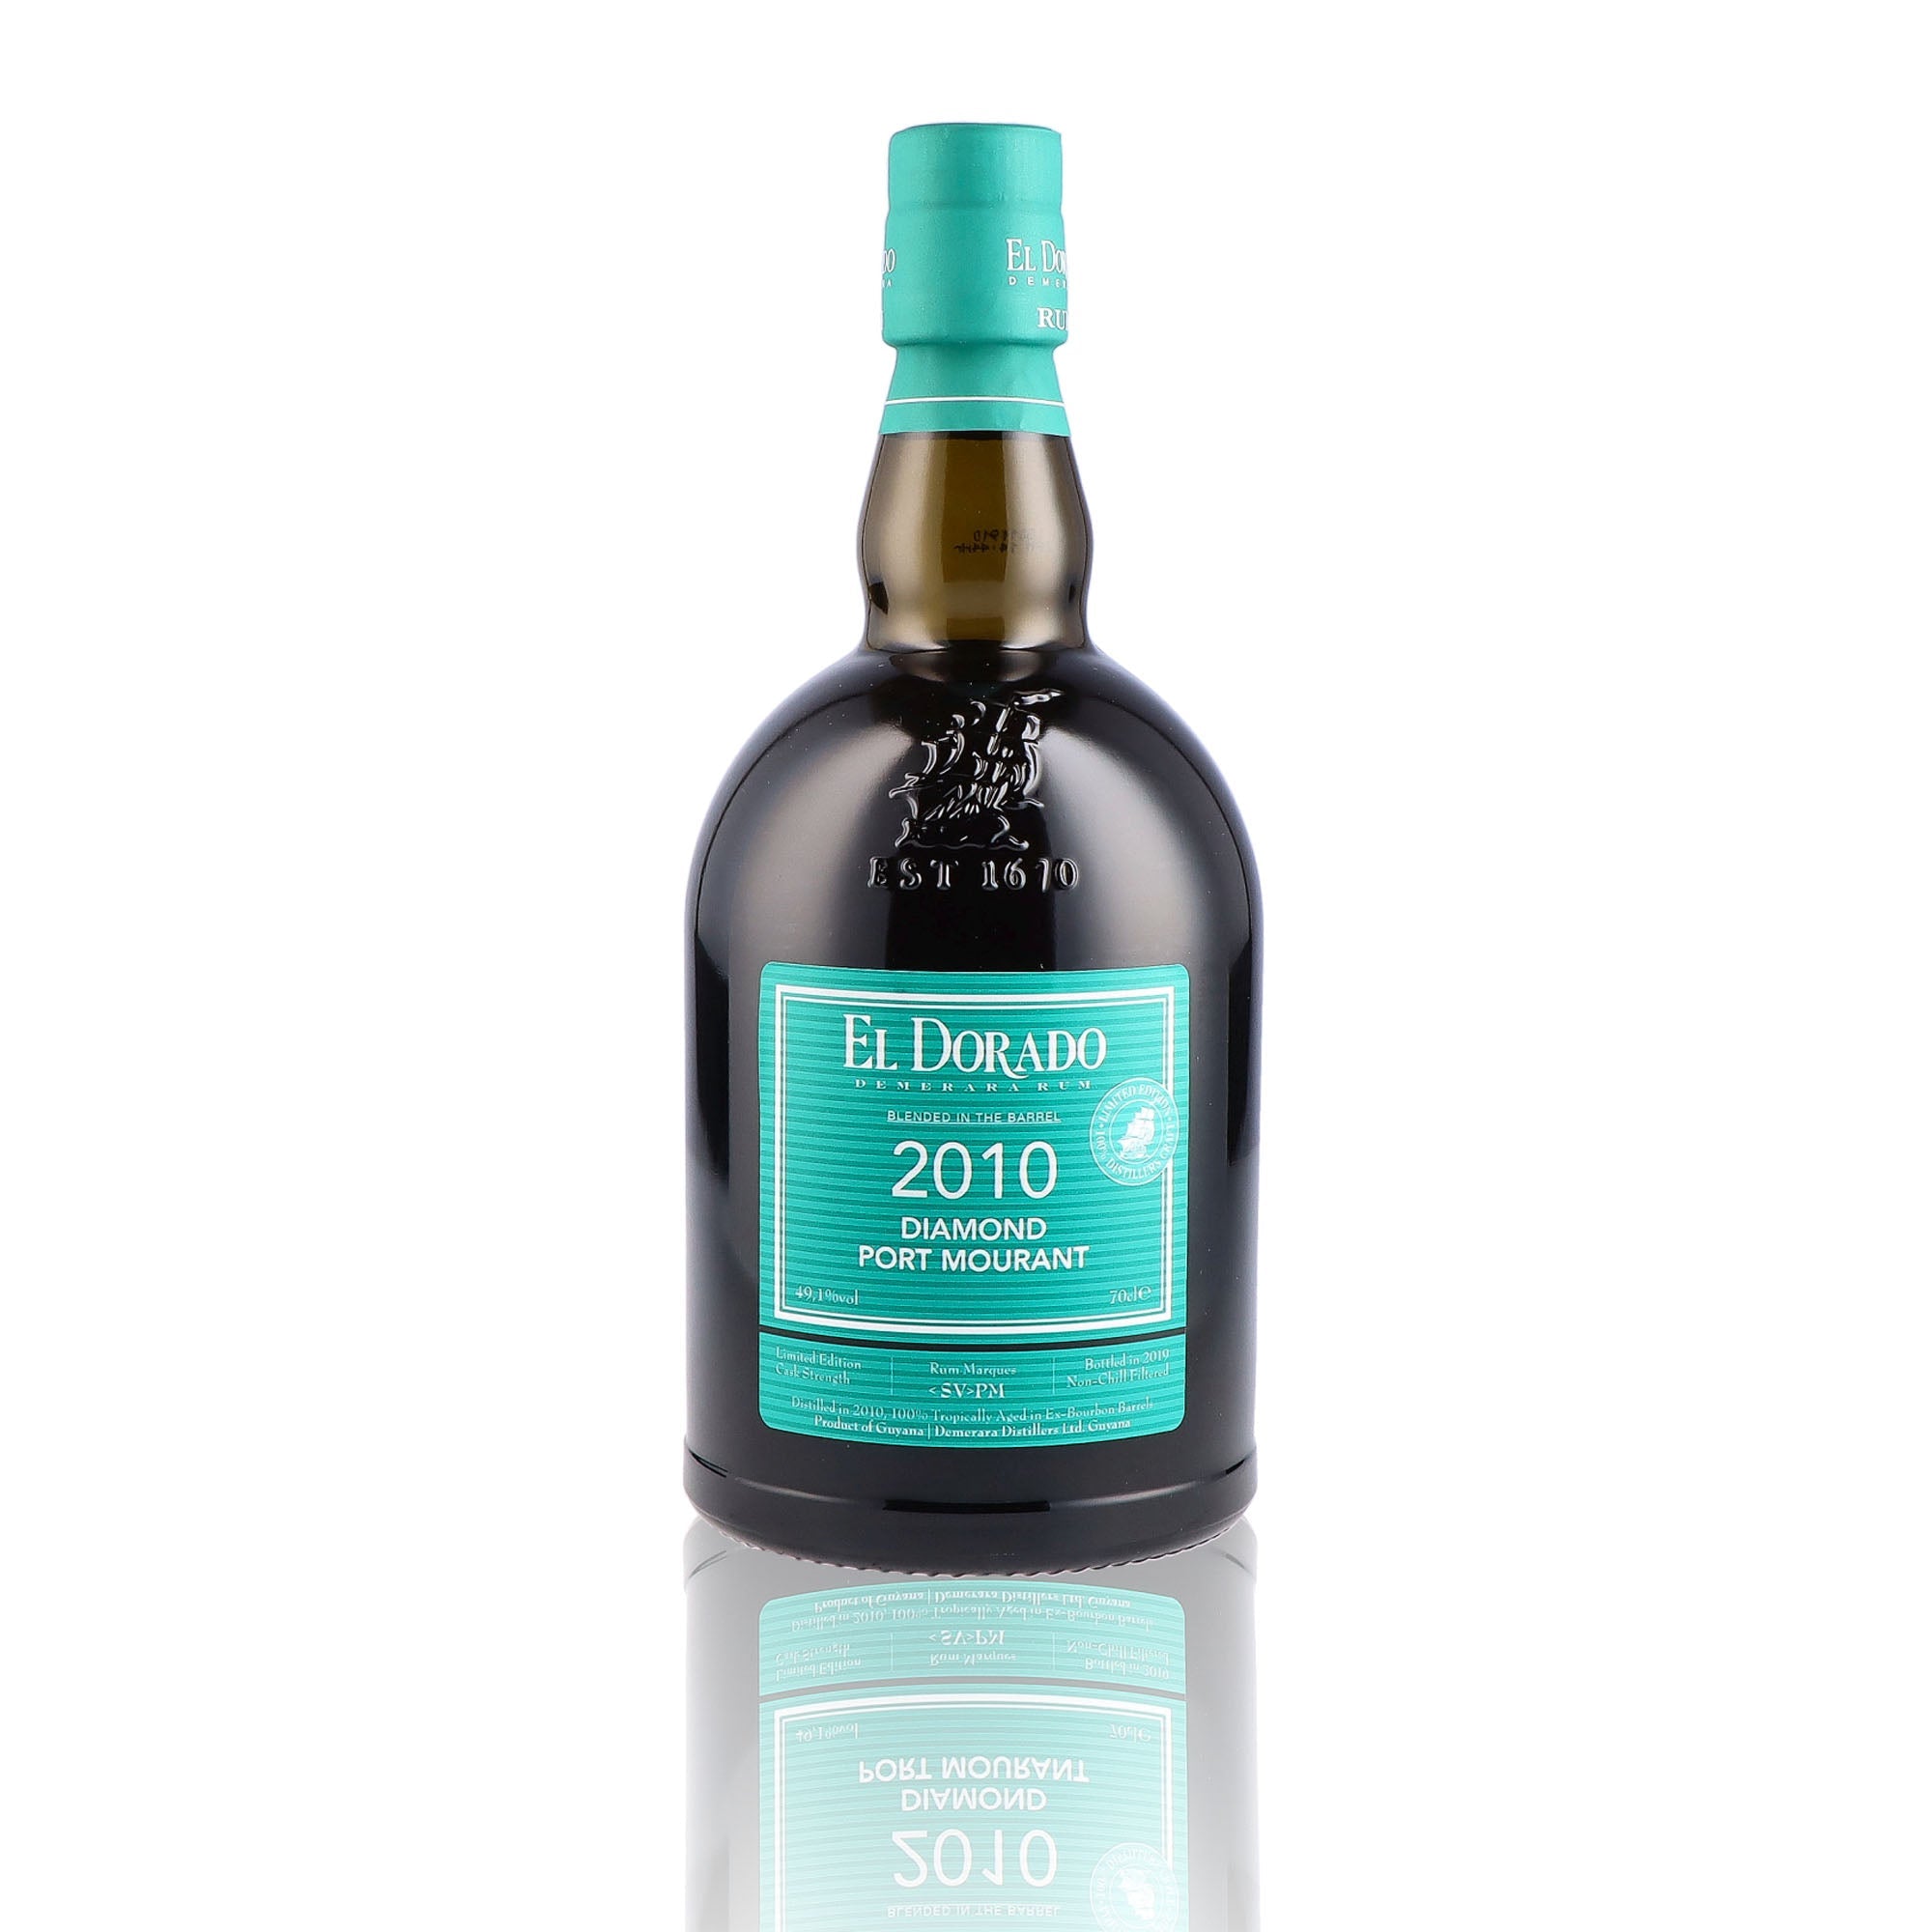 Une bouteille de rhum vieux, de la marque El Dorado, nommée Diamond Port Mourant, du millésime 2010.